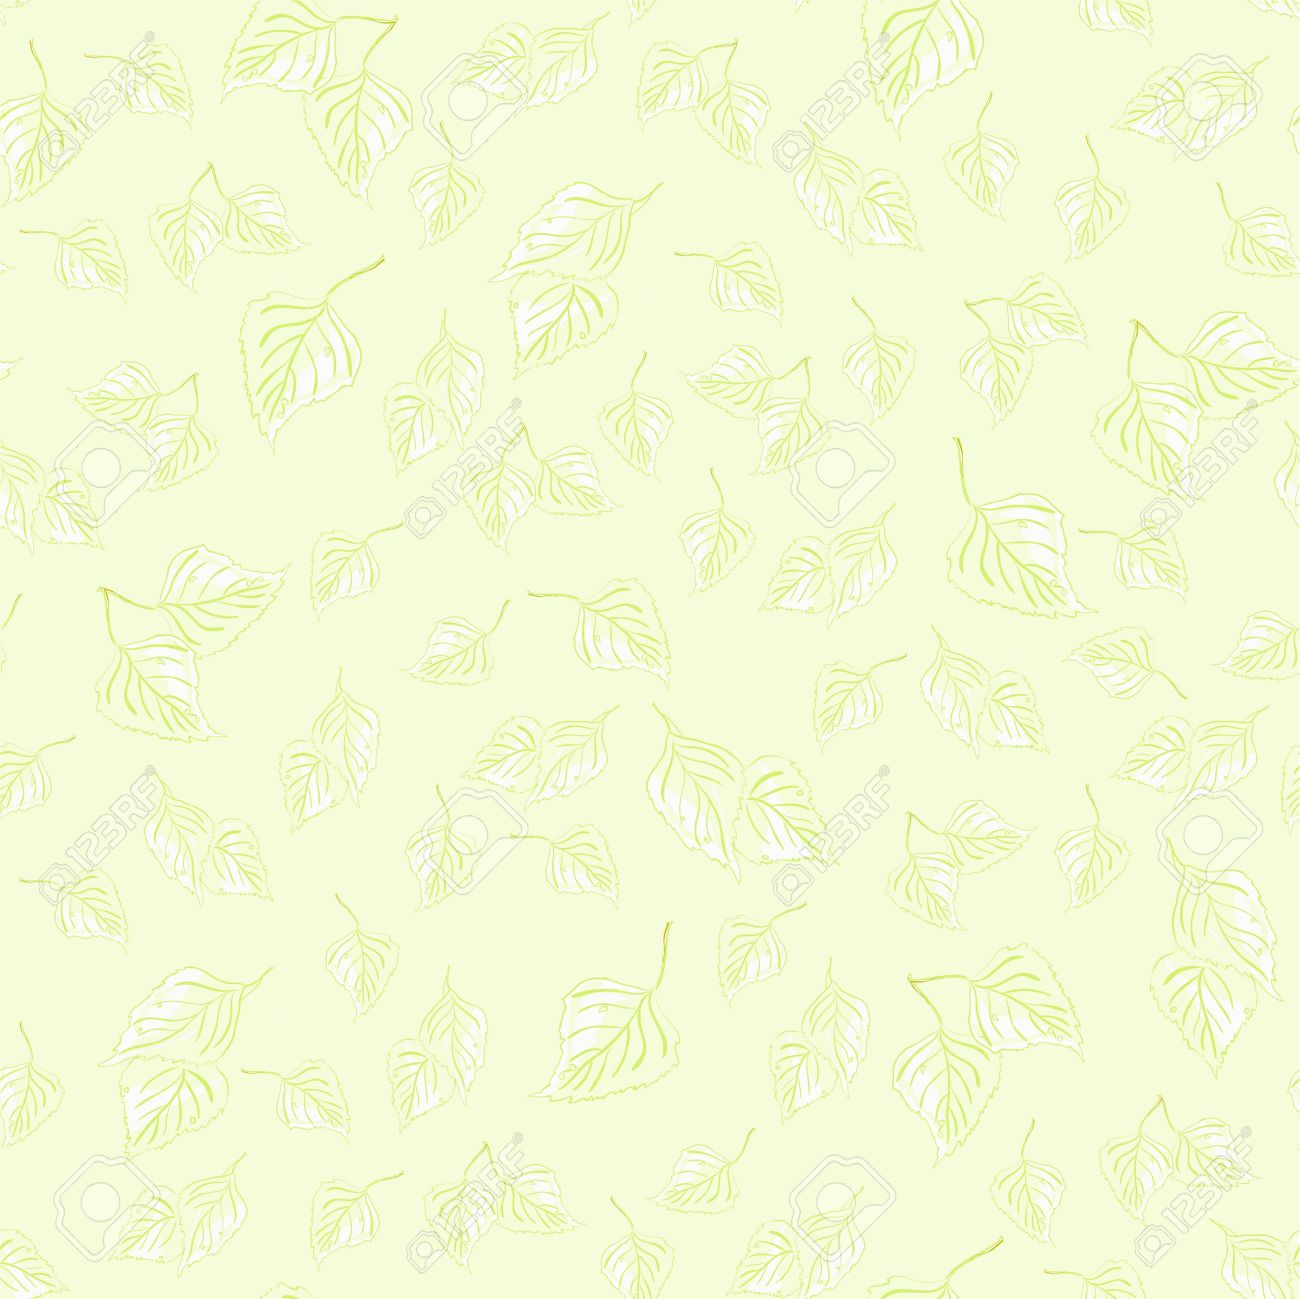 45+] Green Wallpaper Designs Nature - WallpaperSafari